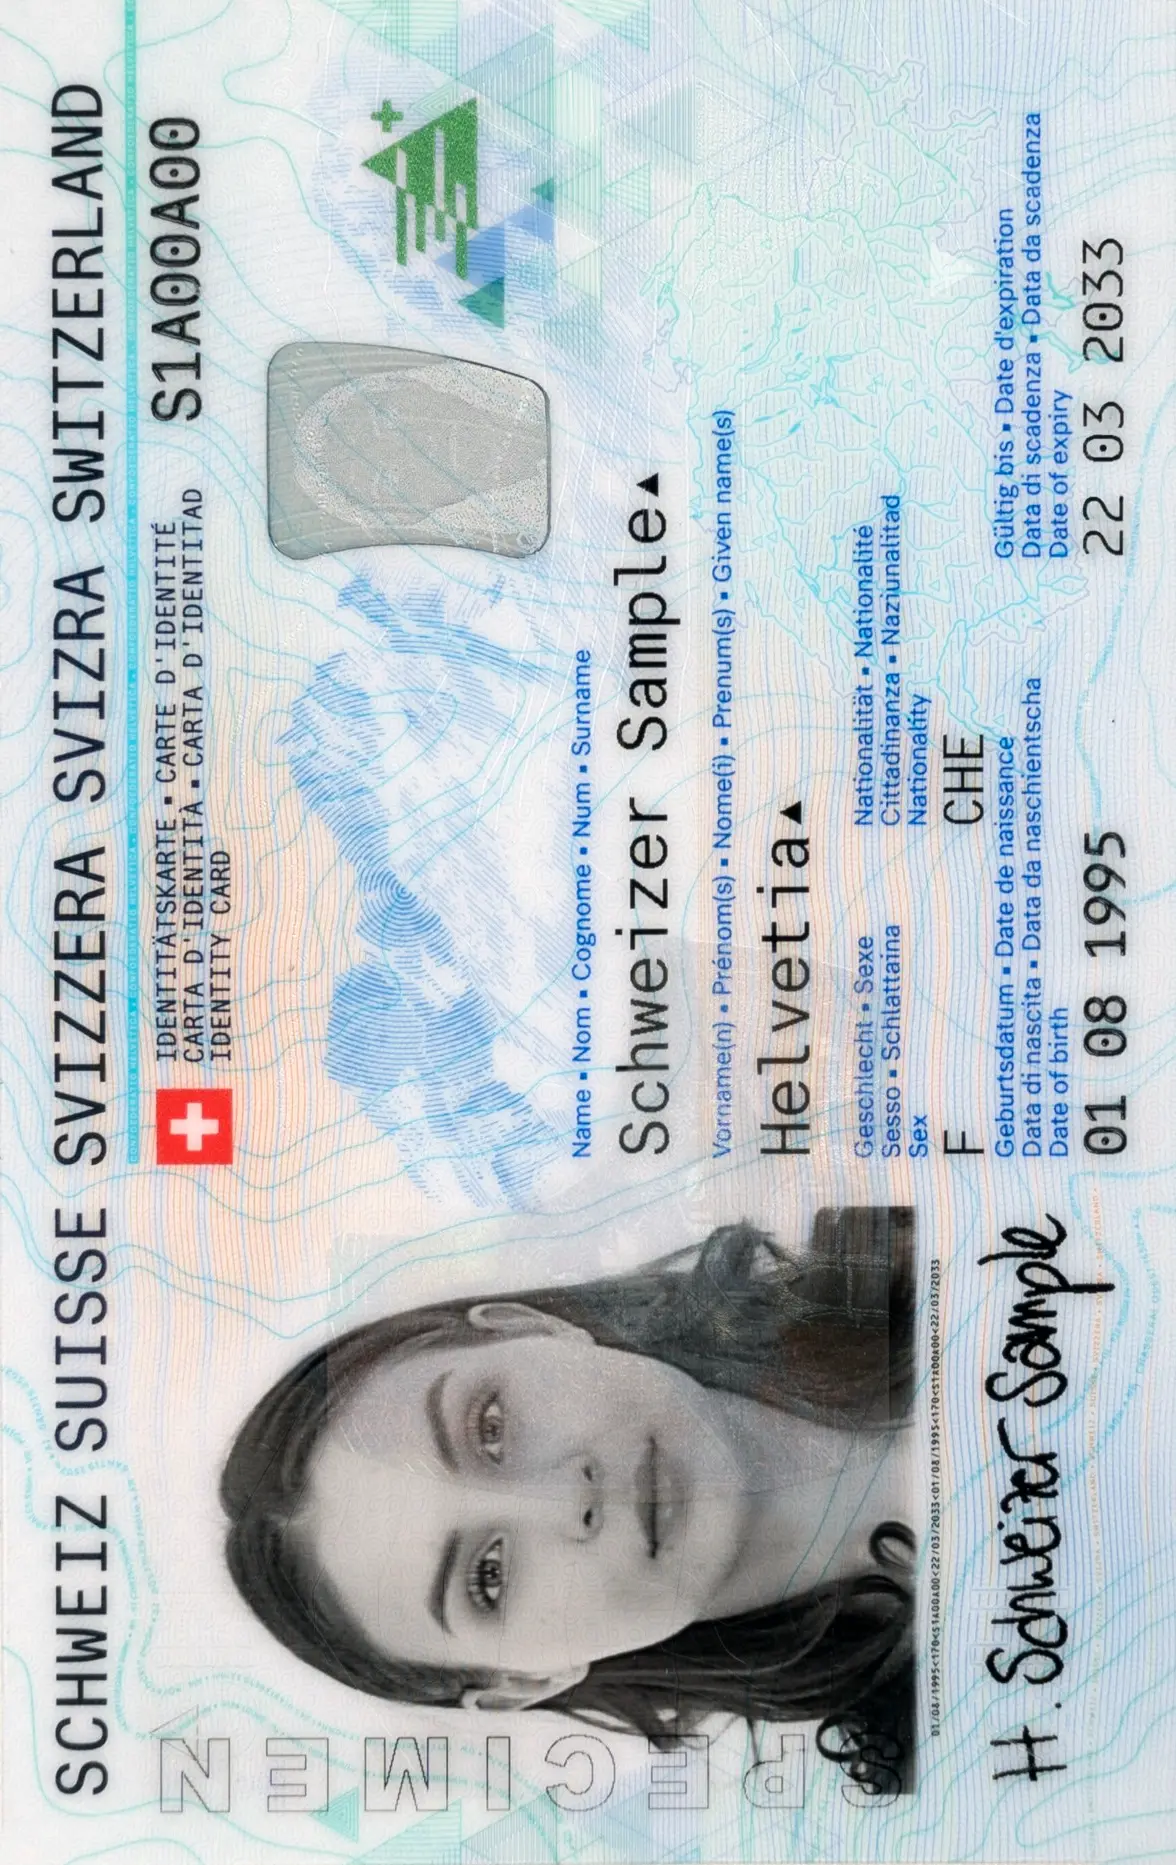 Photo de carte d'identité suisse